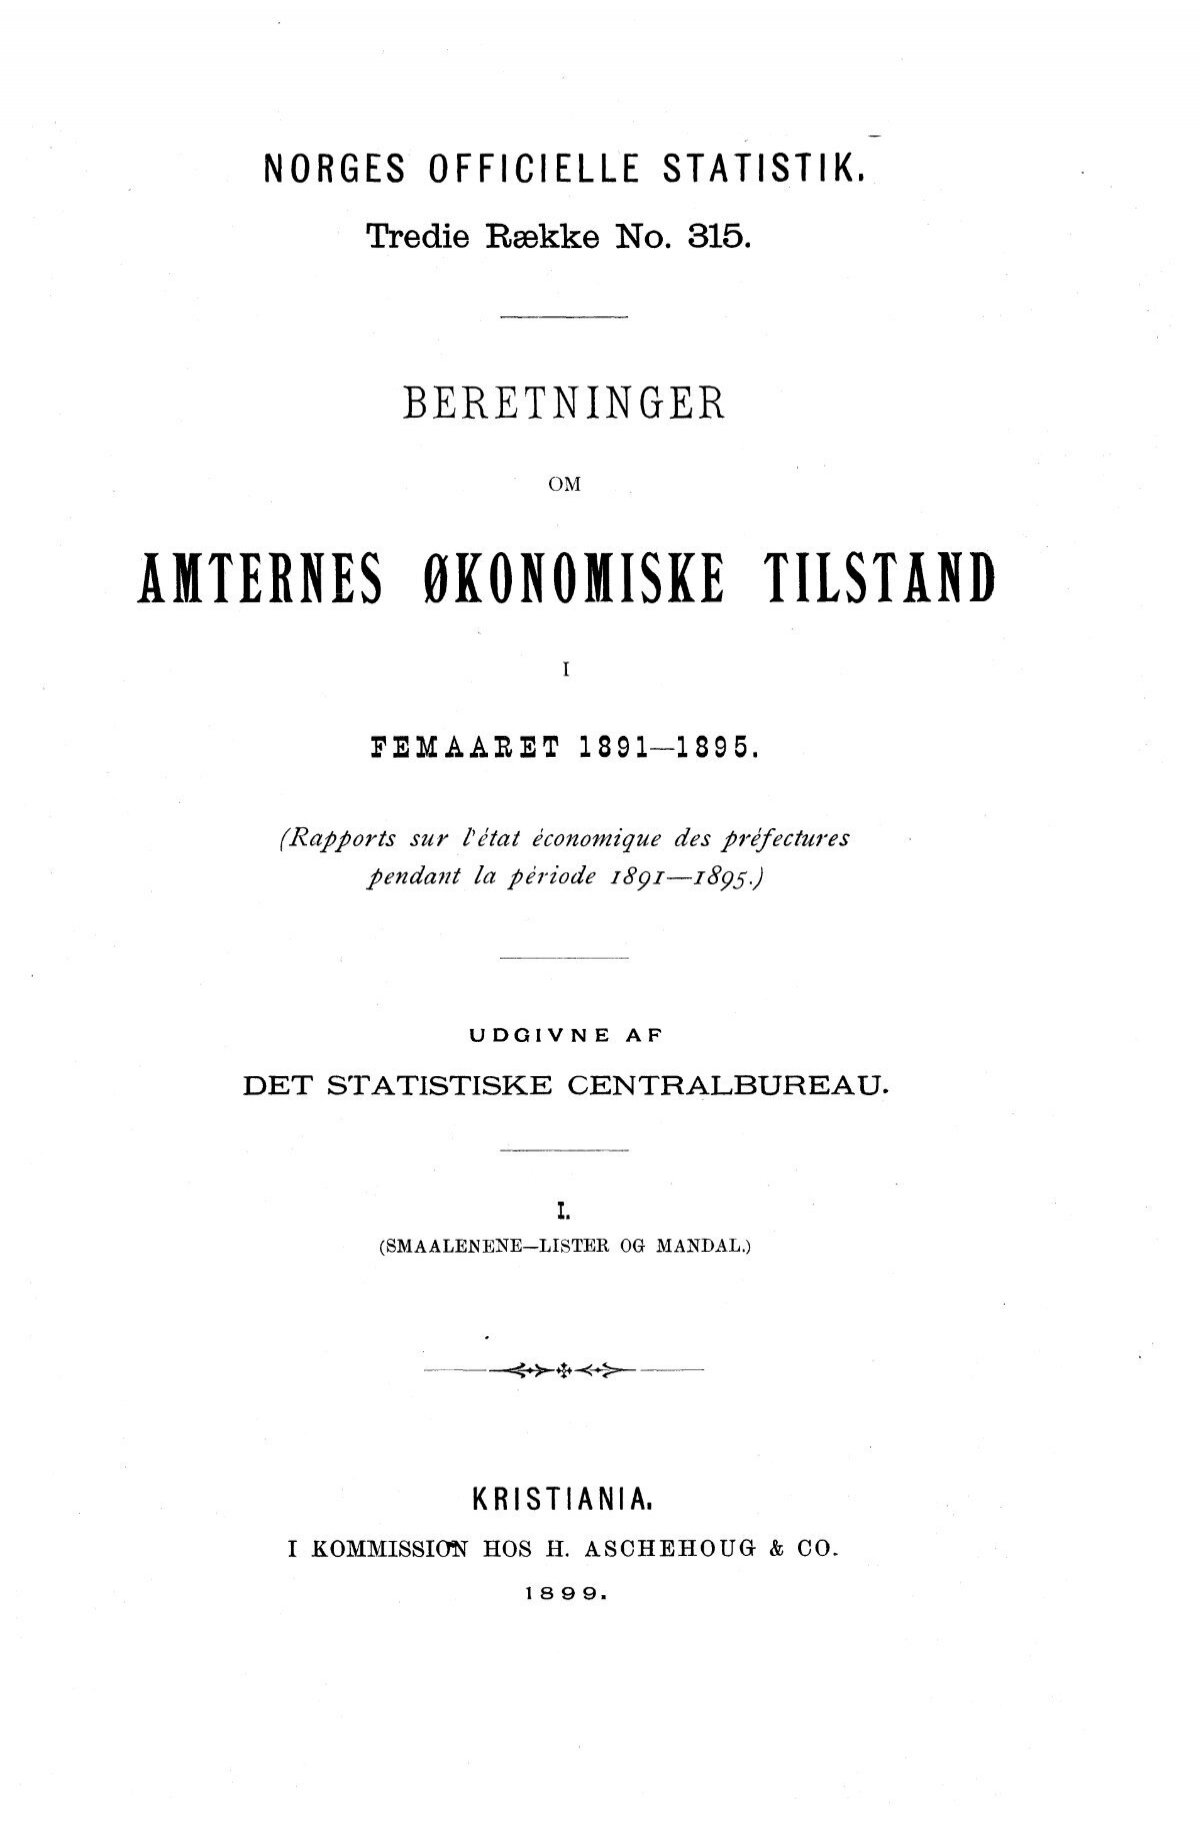 beretninger amternes økonomiske tilstand i femaaret 1891-1895